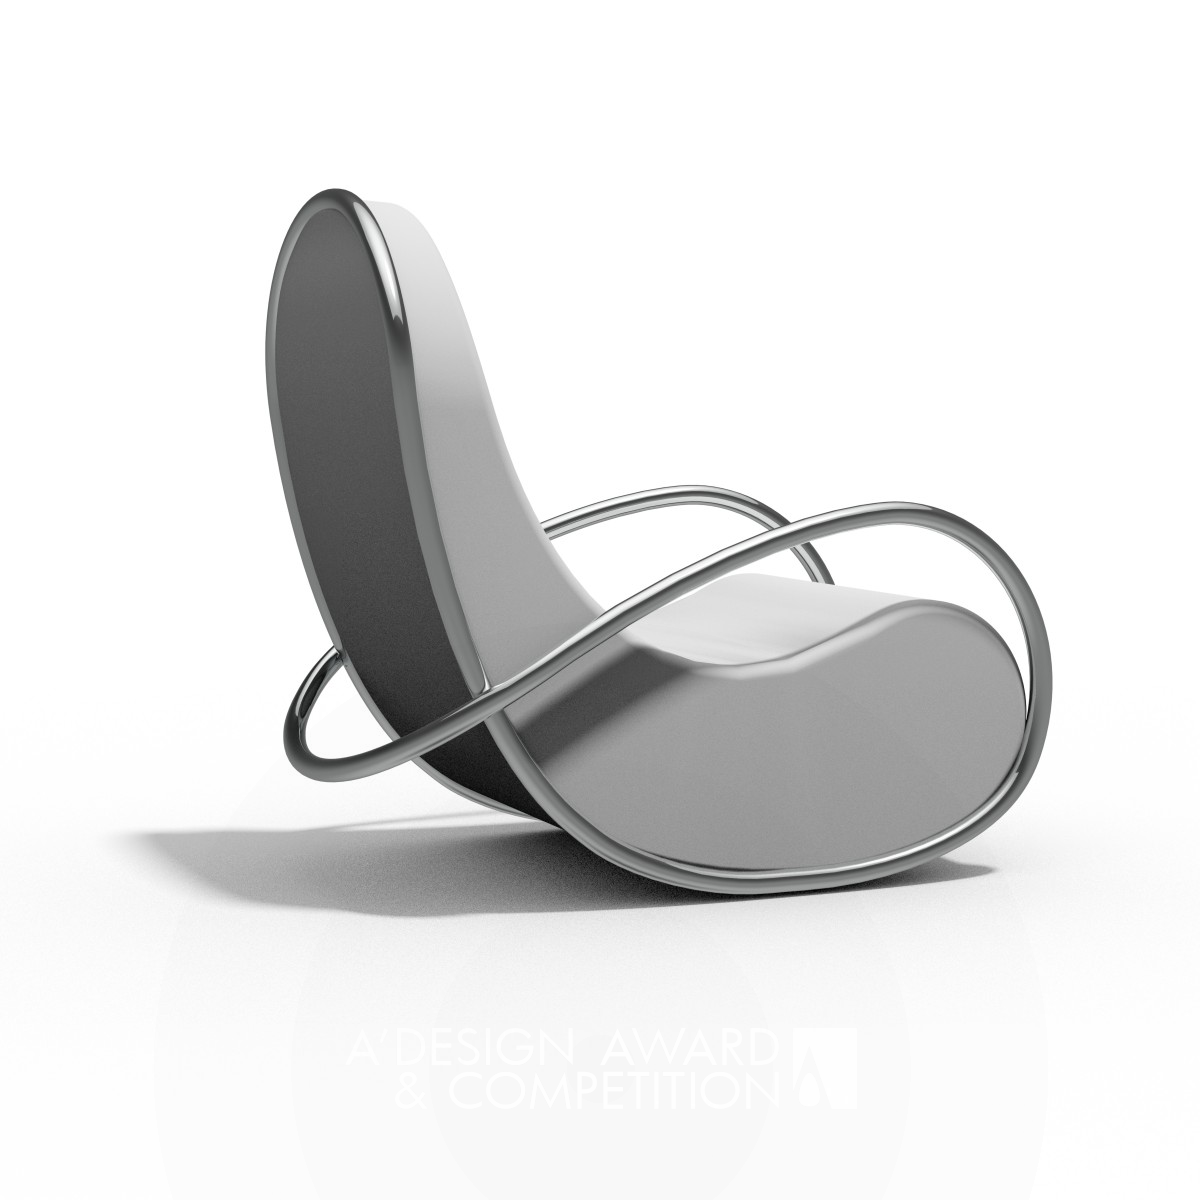 xifix2base rocking-chair-one rocking chair by Juergen Josef Goetzmann